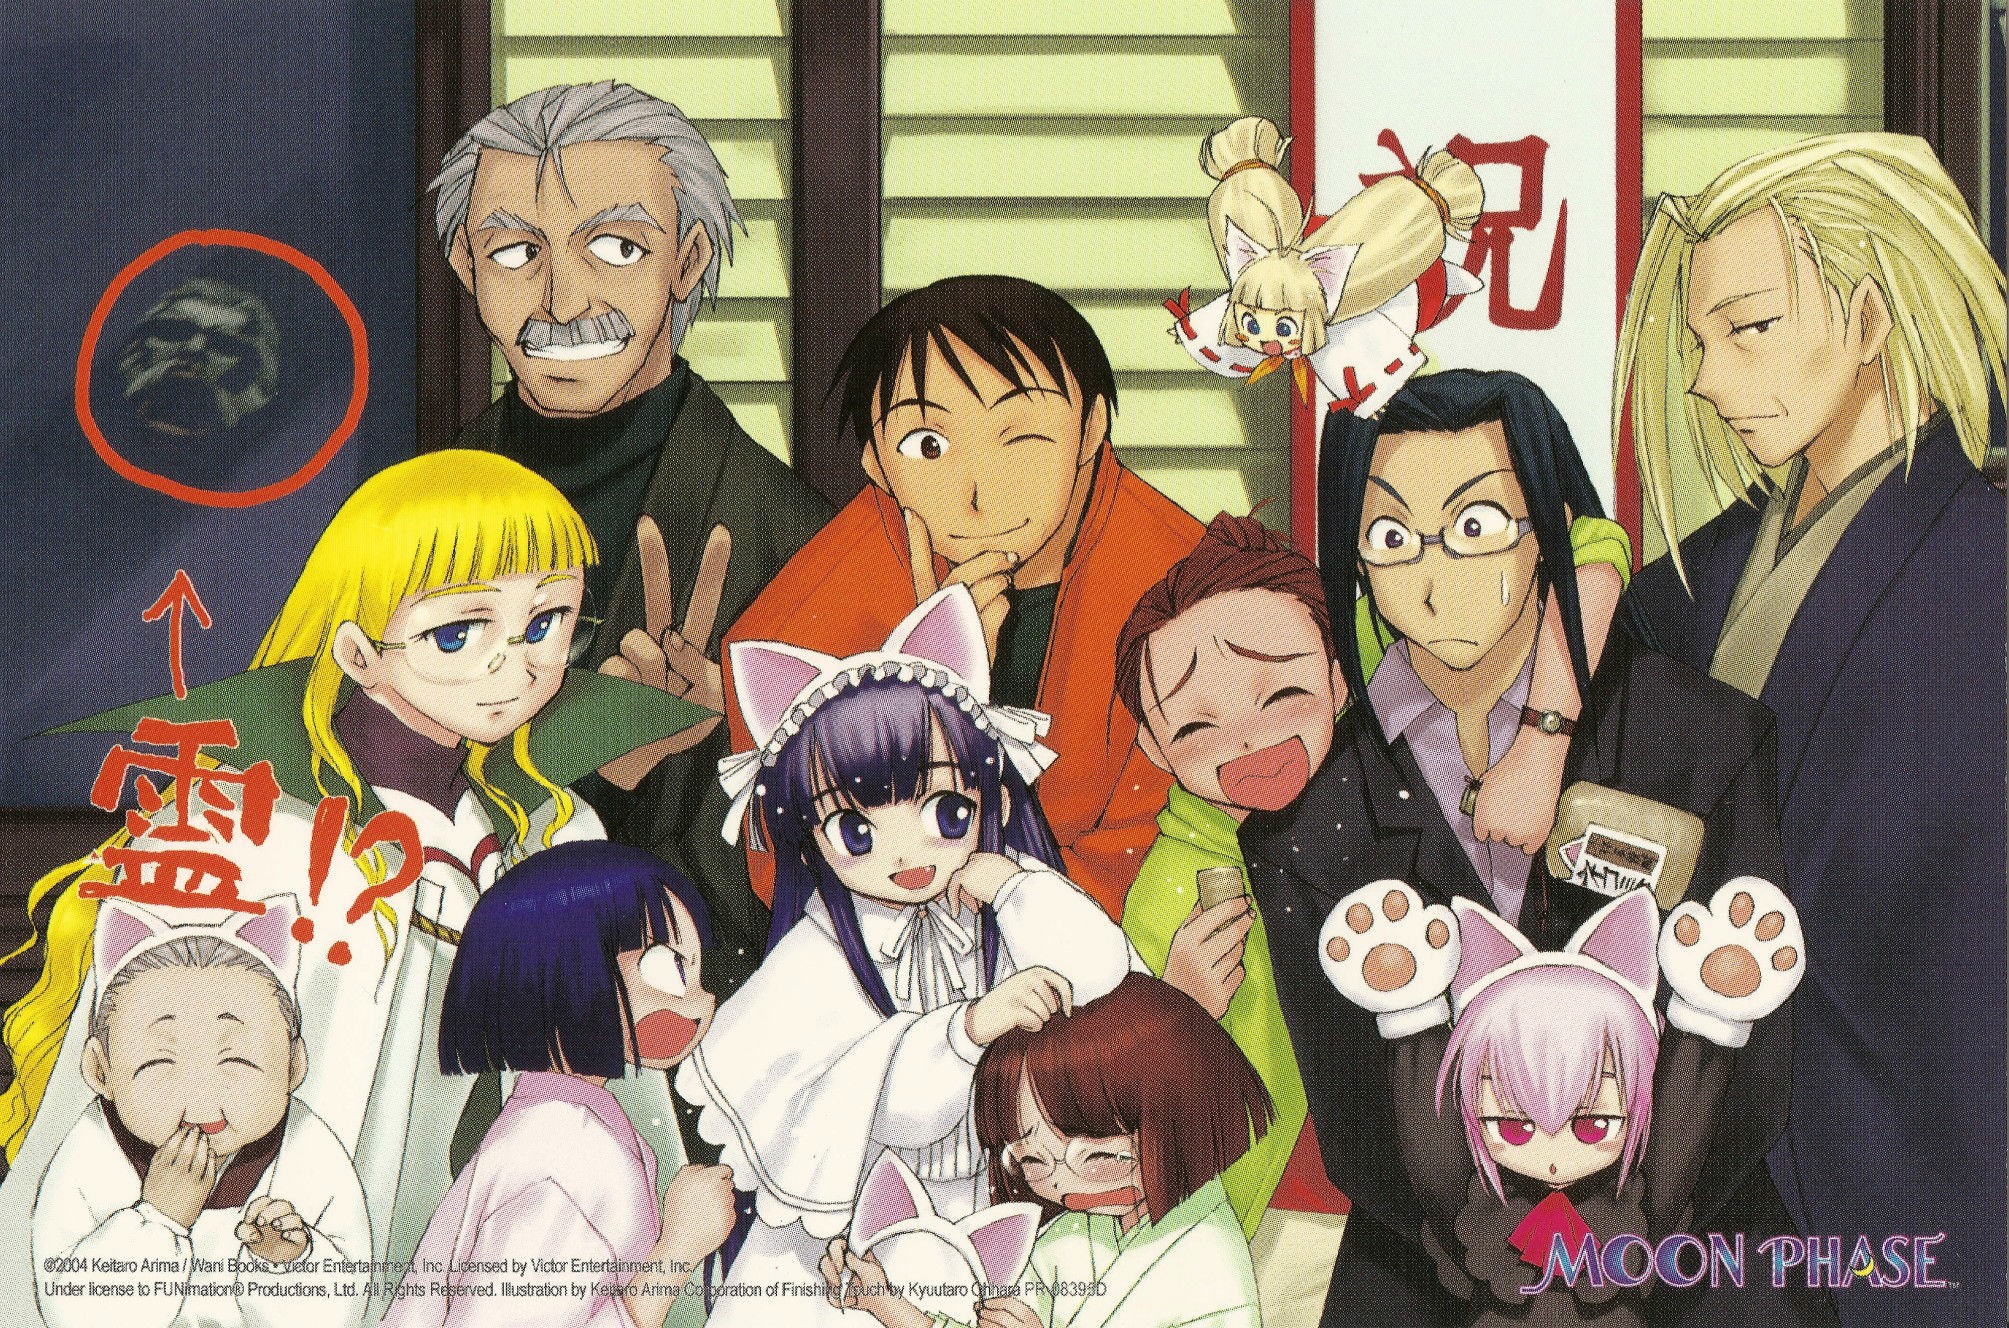 Anime 2009x1328 Tsukuyomi Moon Phase Hazuki anime anime boys anime men anime girls 2004 (Year)